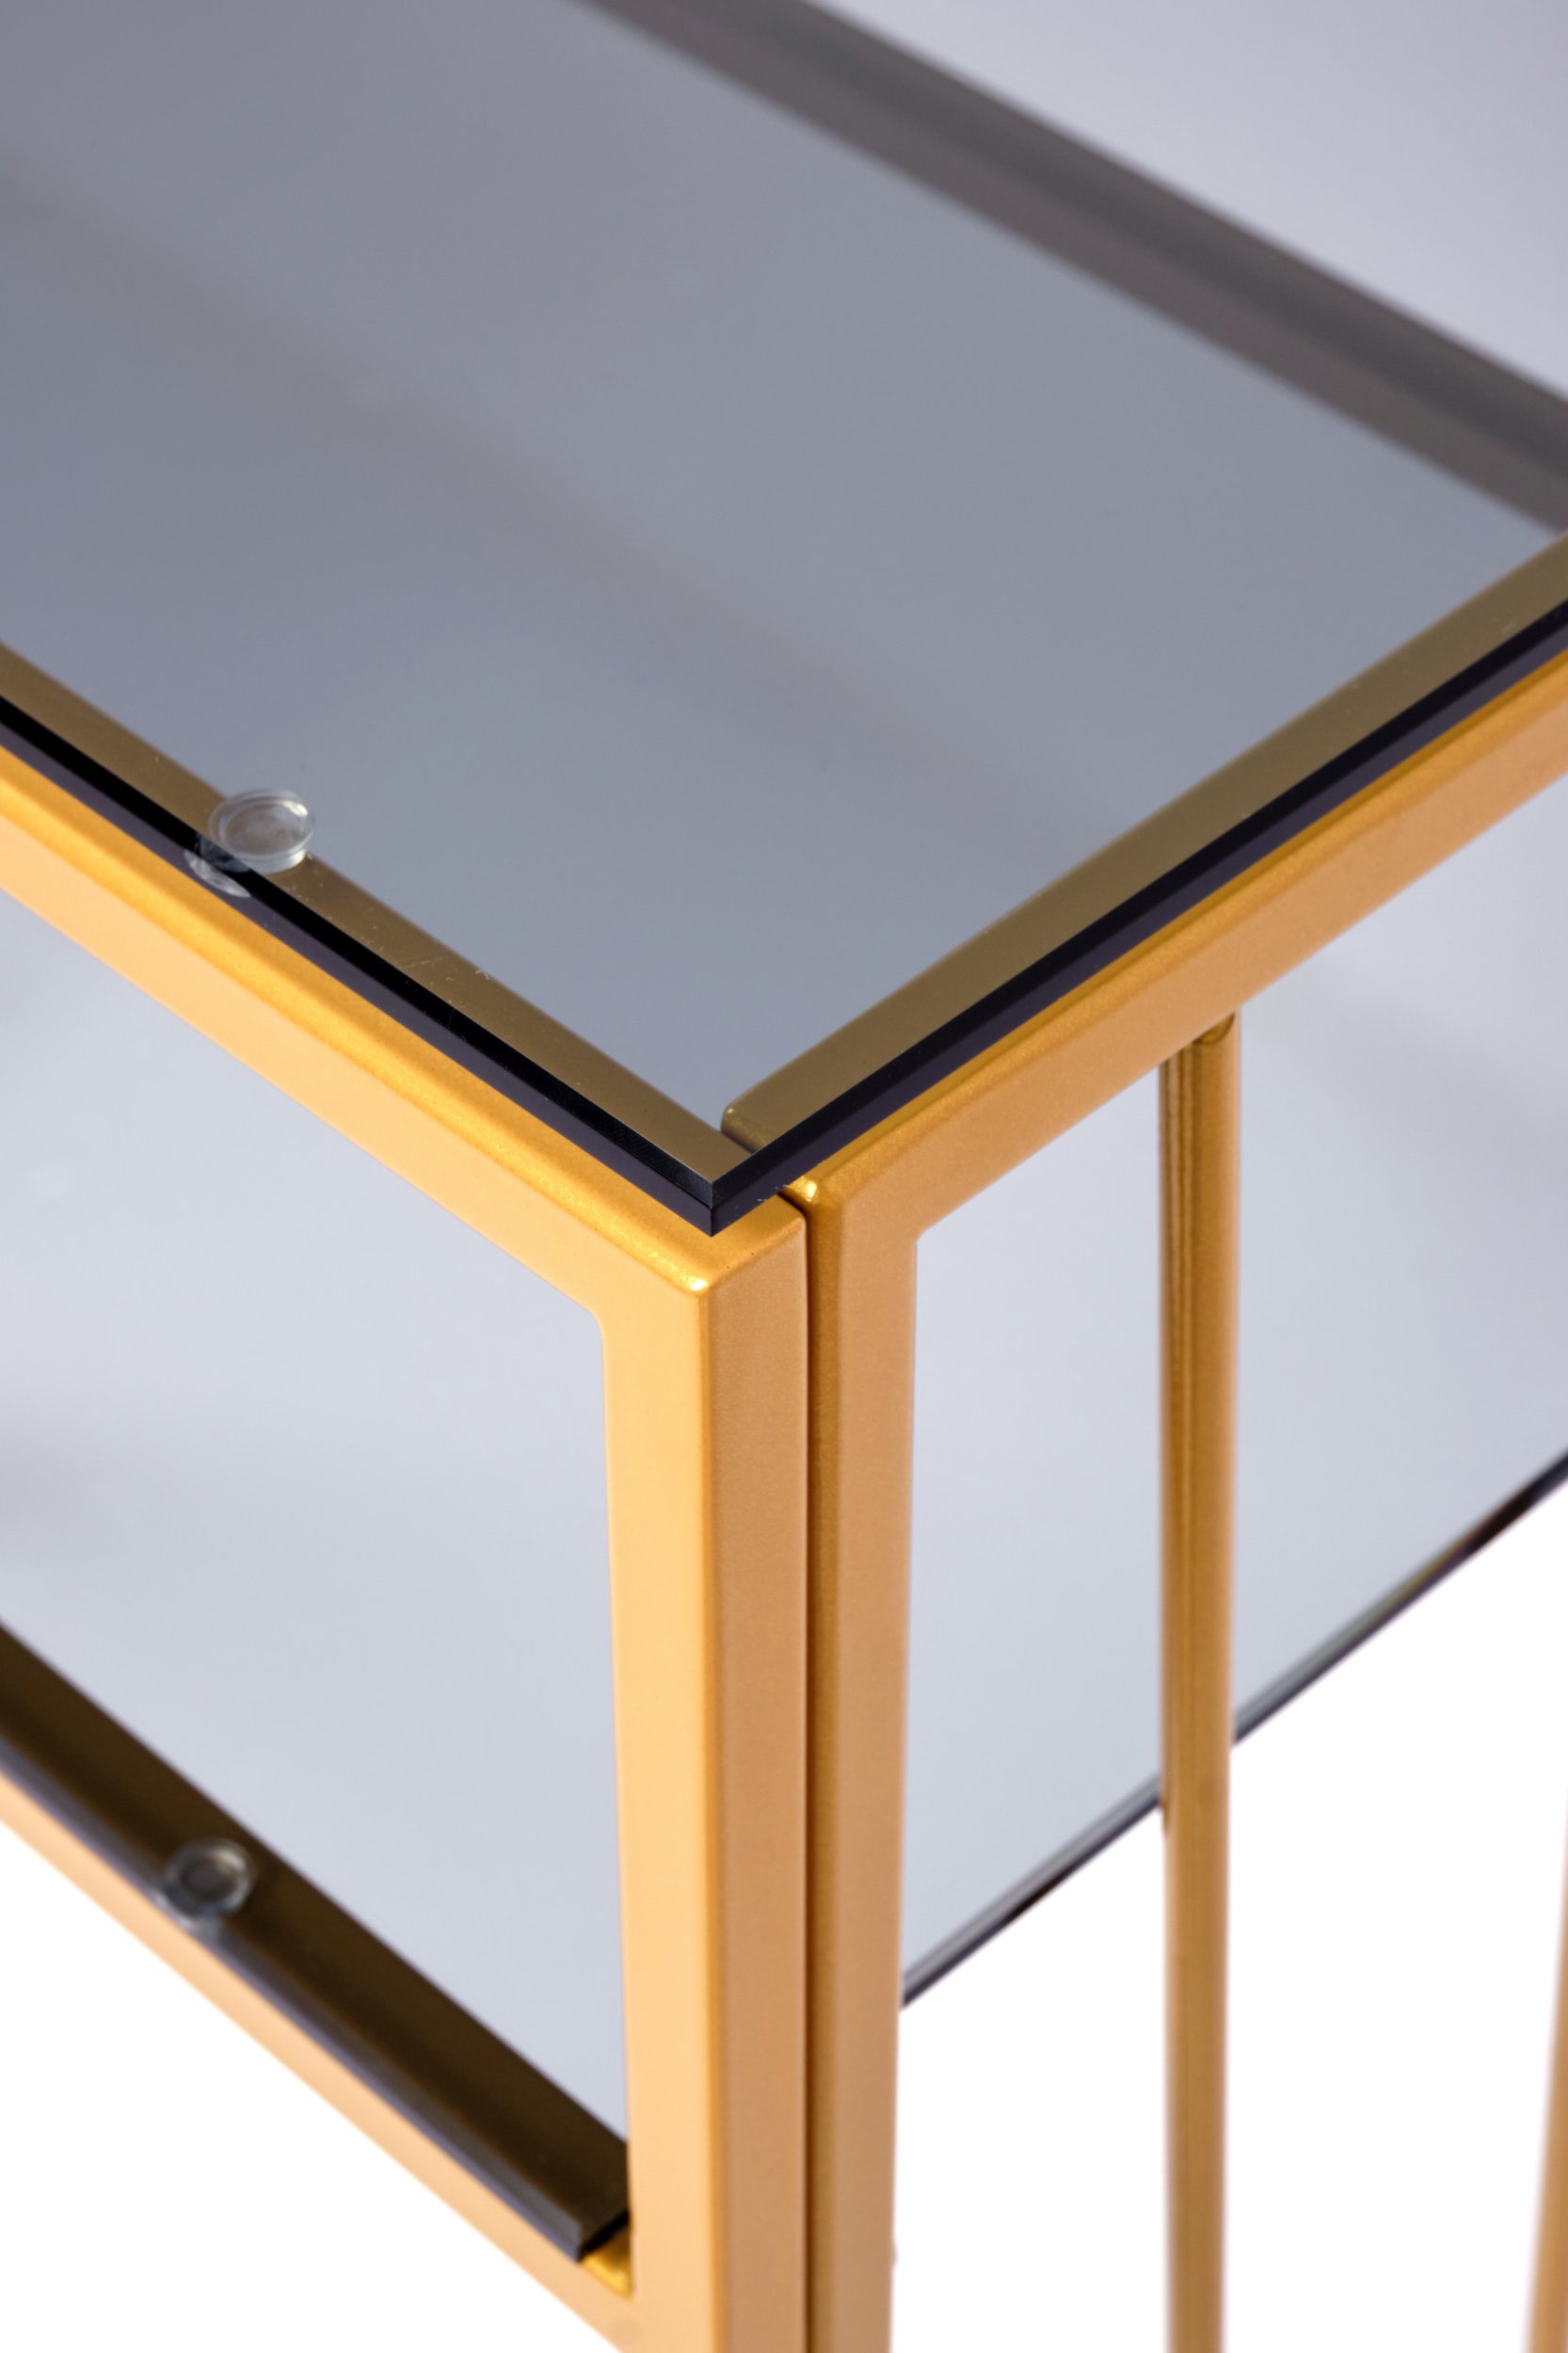 Консольный стол AllConsoles БОЛОНЬ 1123-CG grey, цвет золотистый;матовый - фото 7